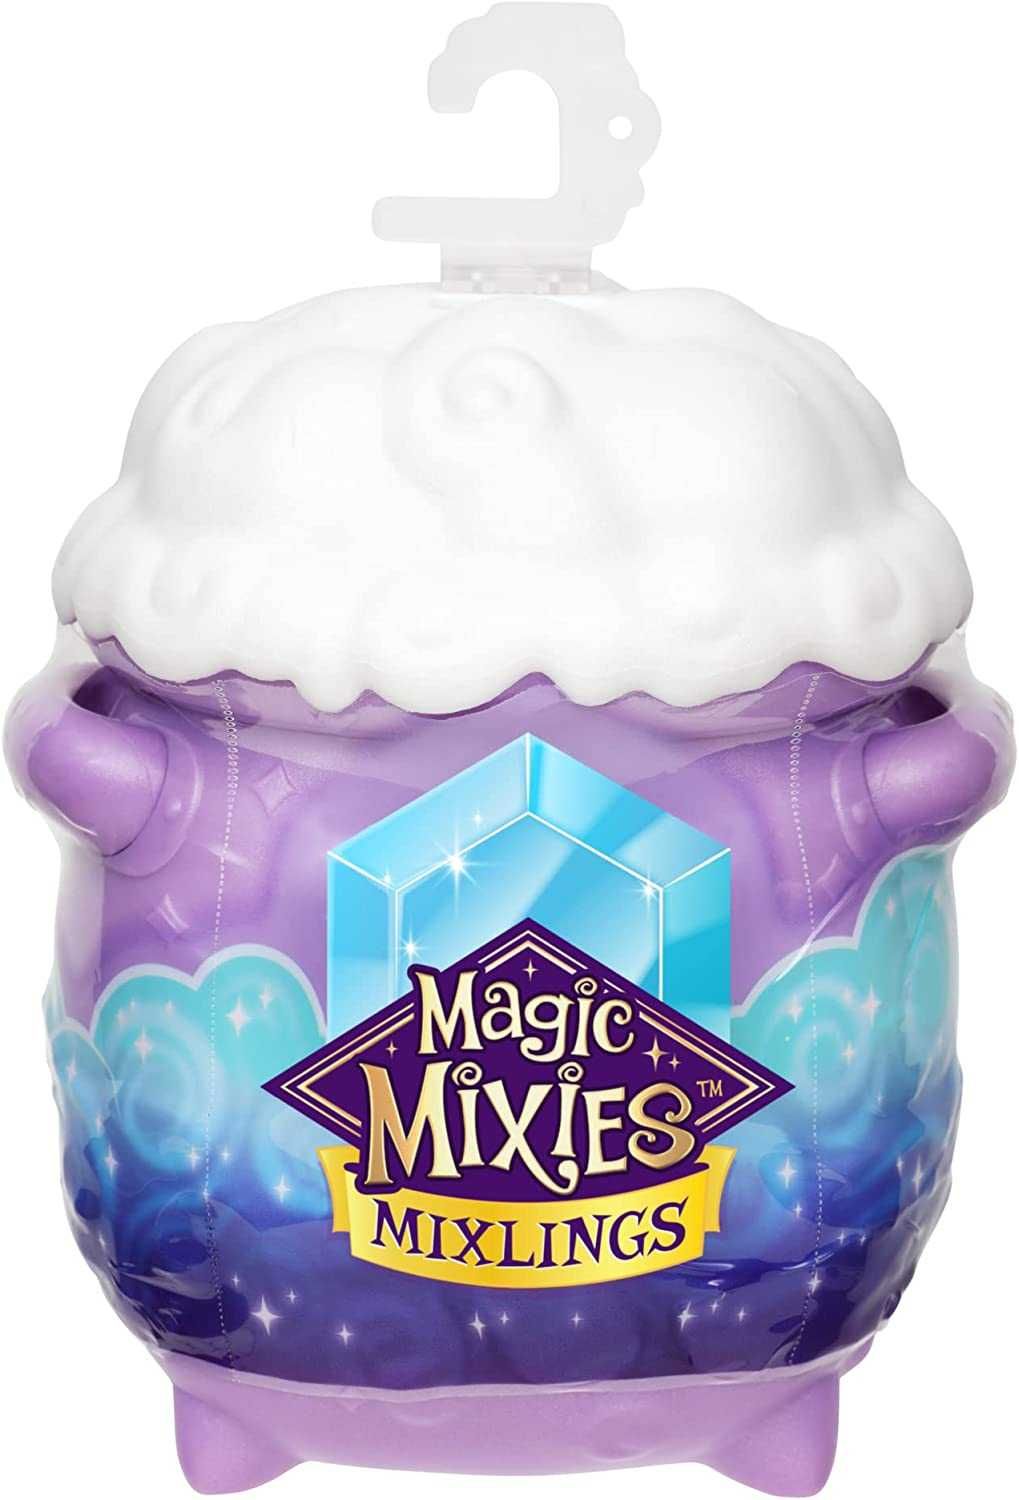 Набор с 2 фигурками Магические Микслинги Magic Mixies Mixlings